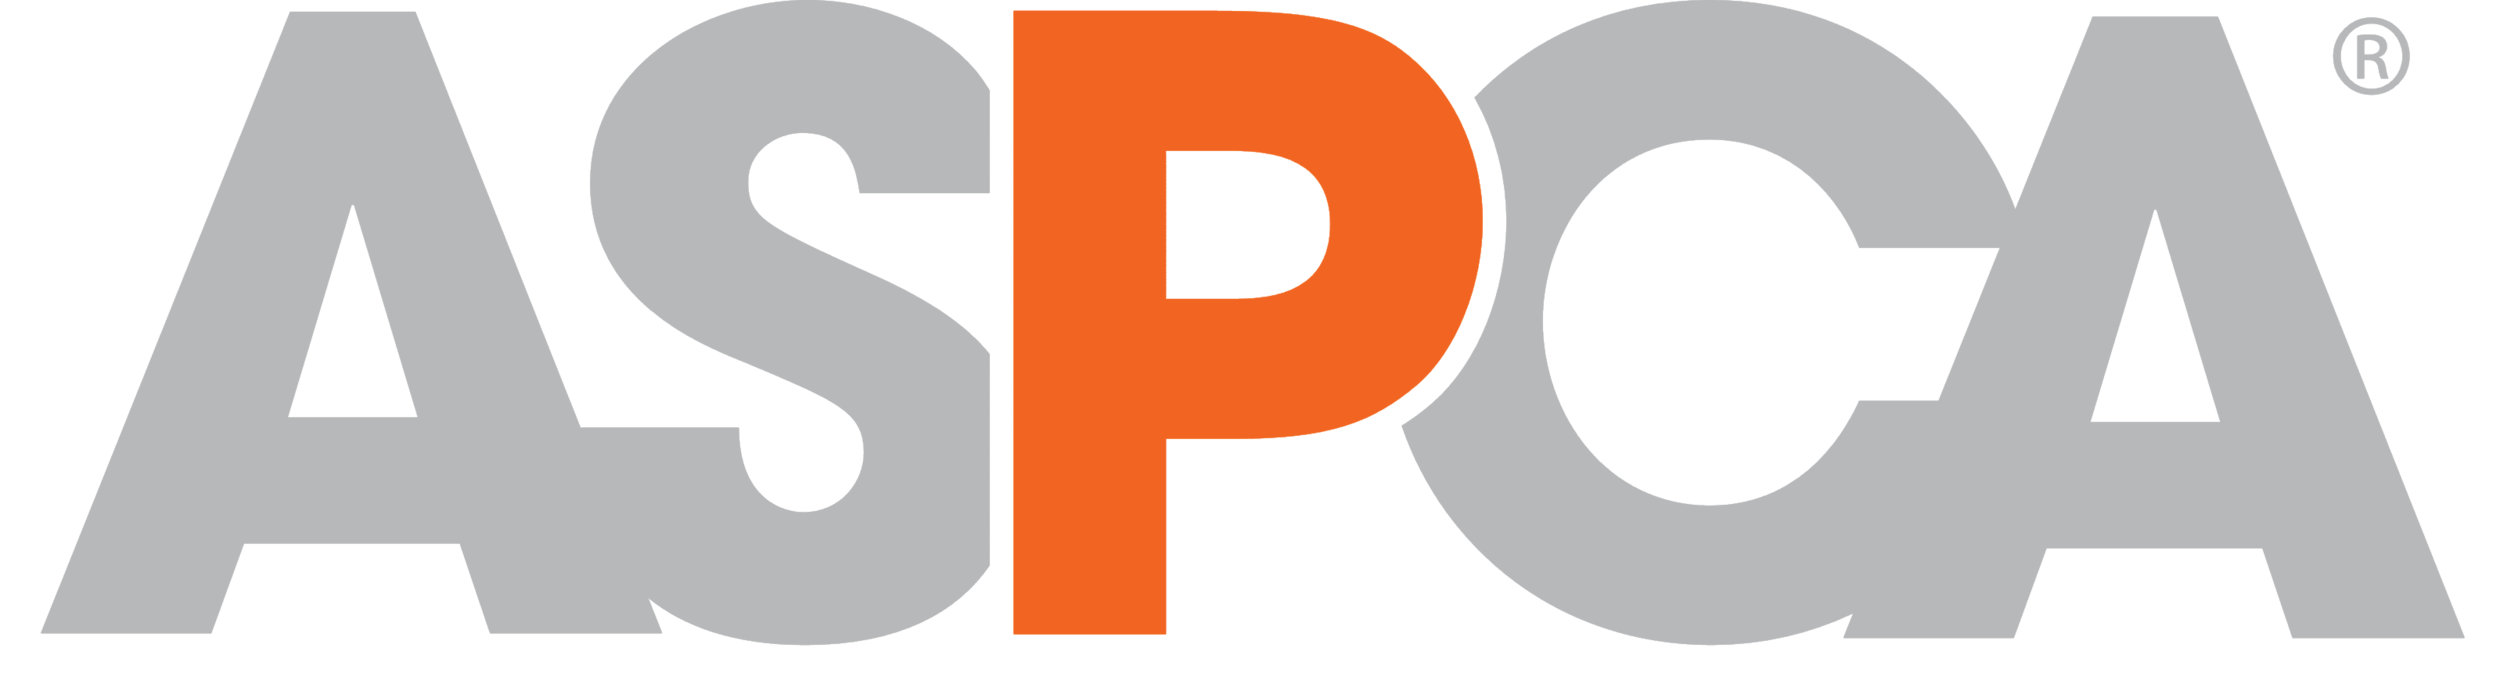 ASPCA-orange-grey-transparent background.png